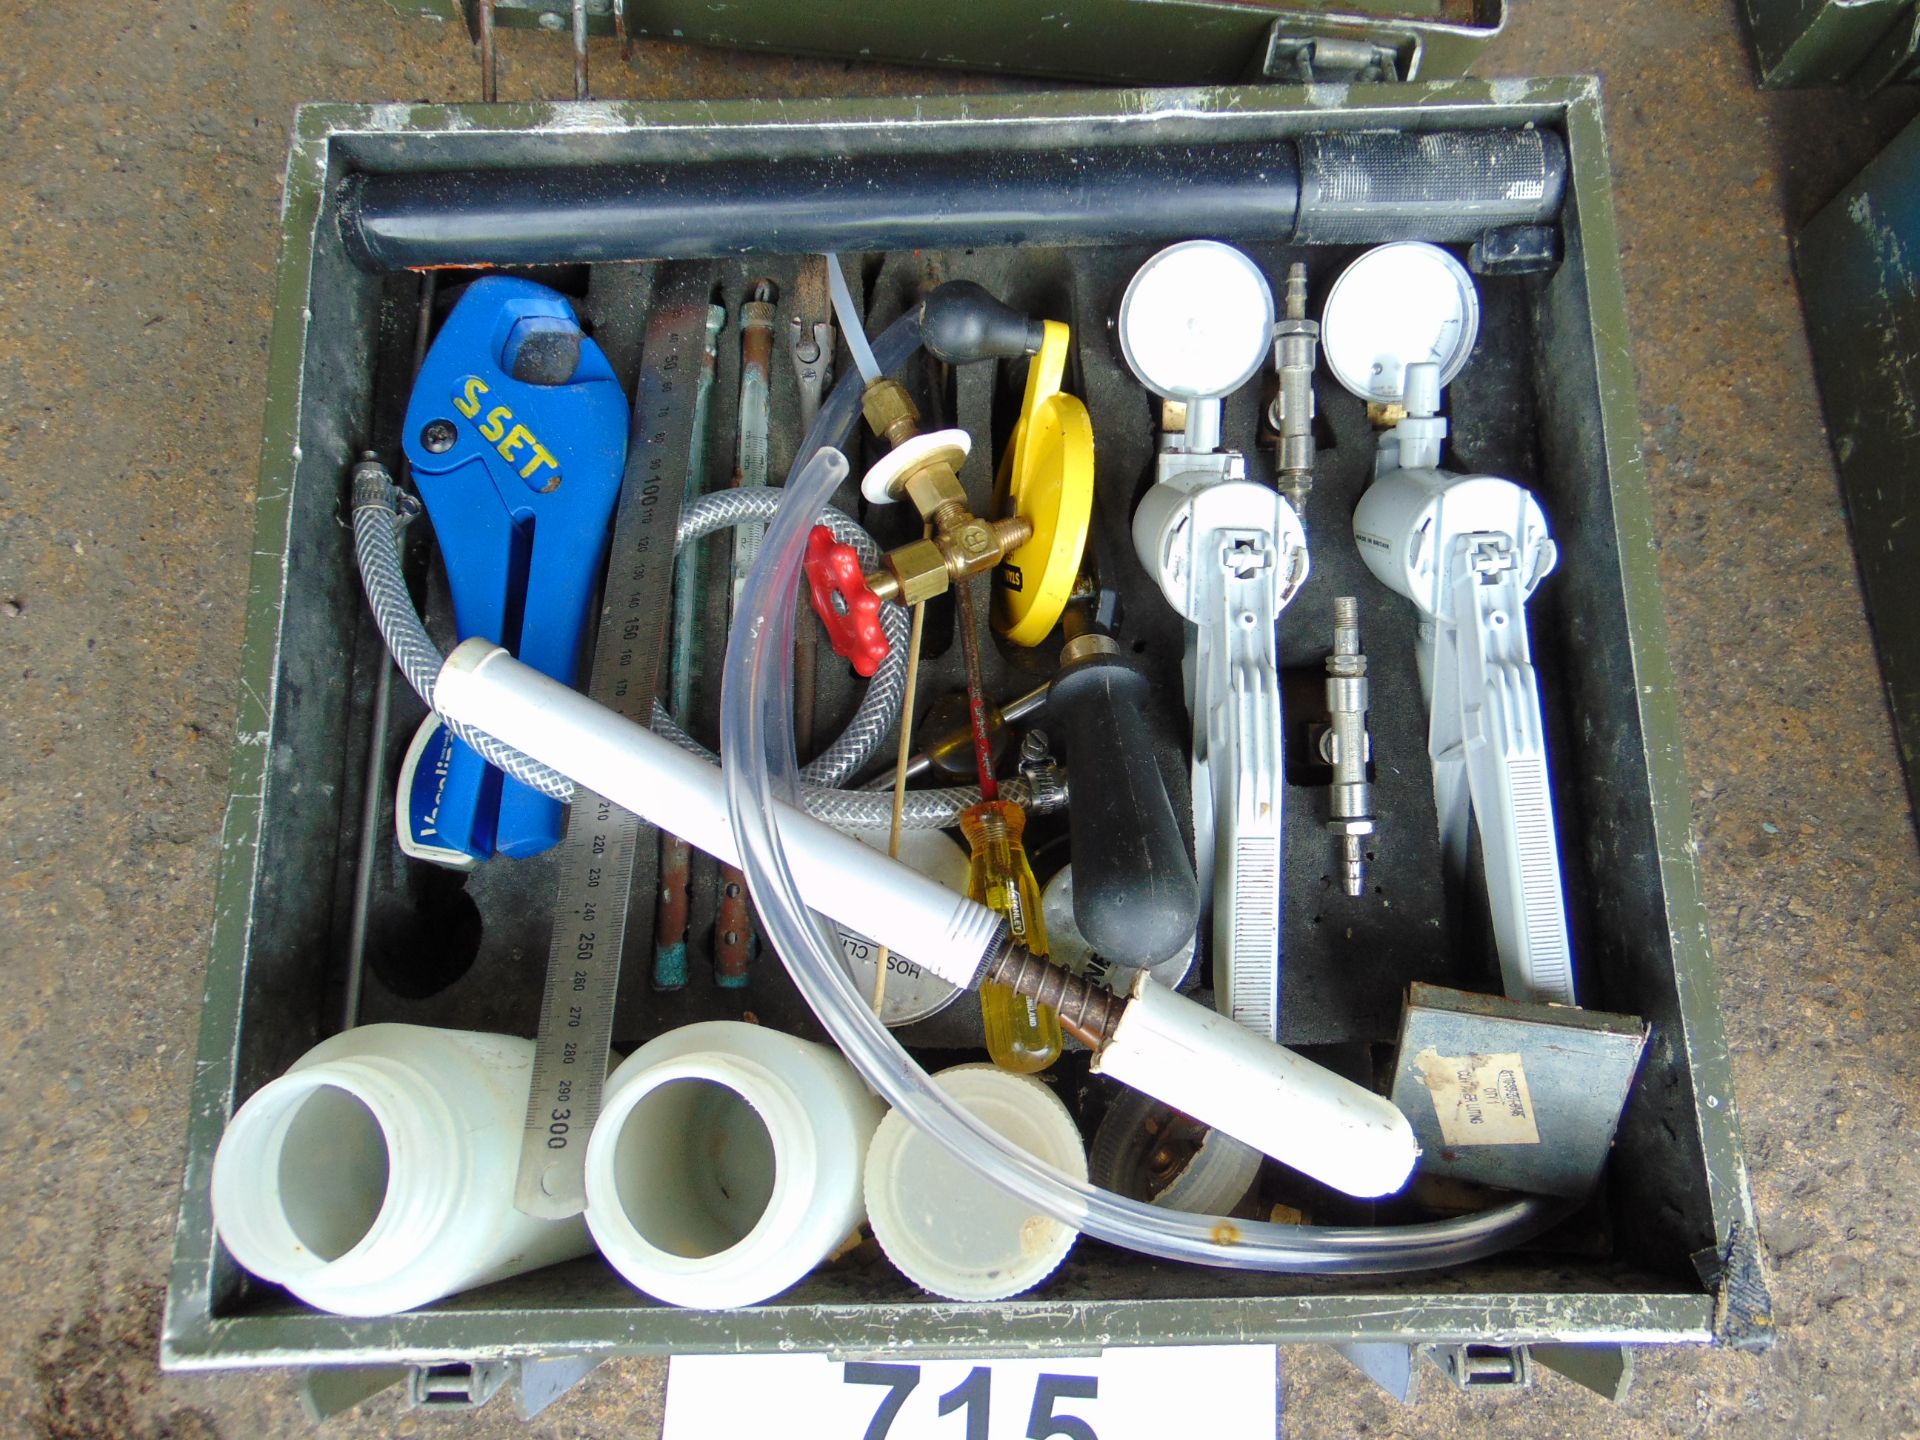 EOD kit Fuze Neutralising in Transit Case - Image 2 of 6